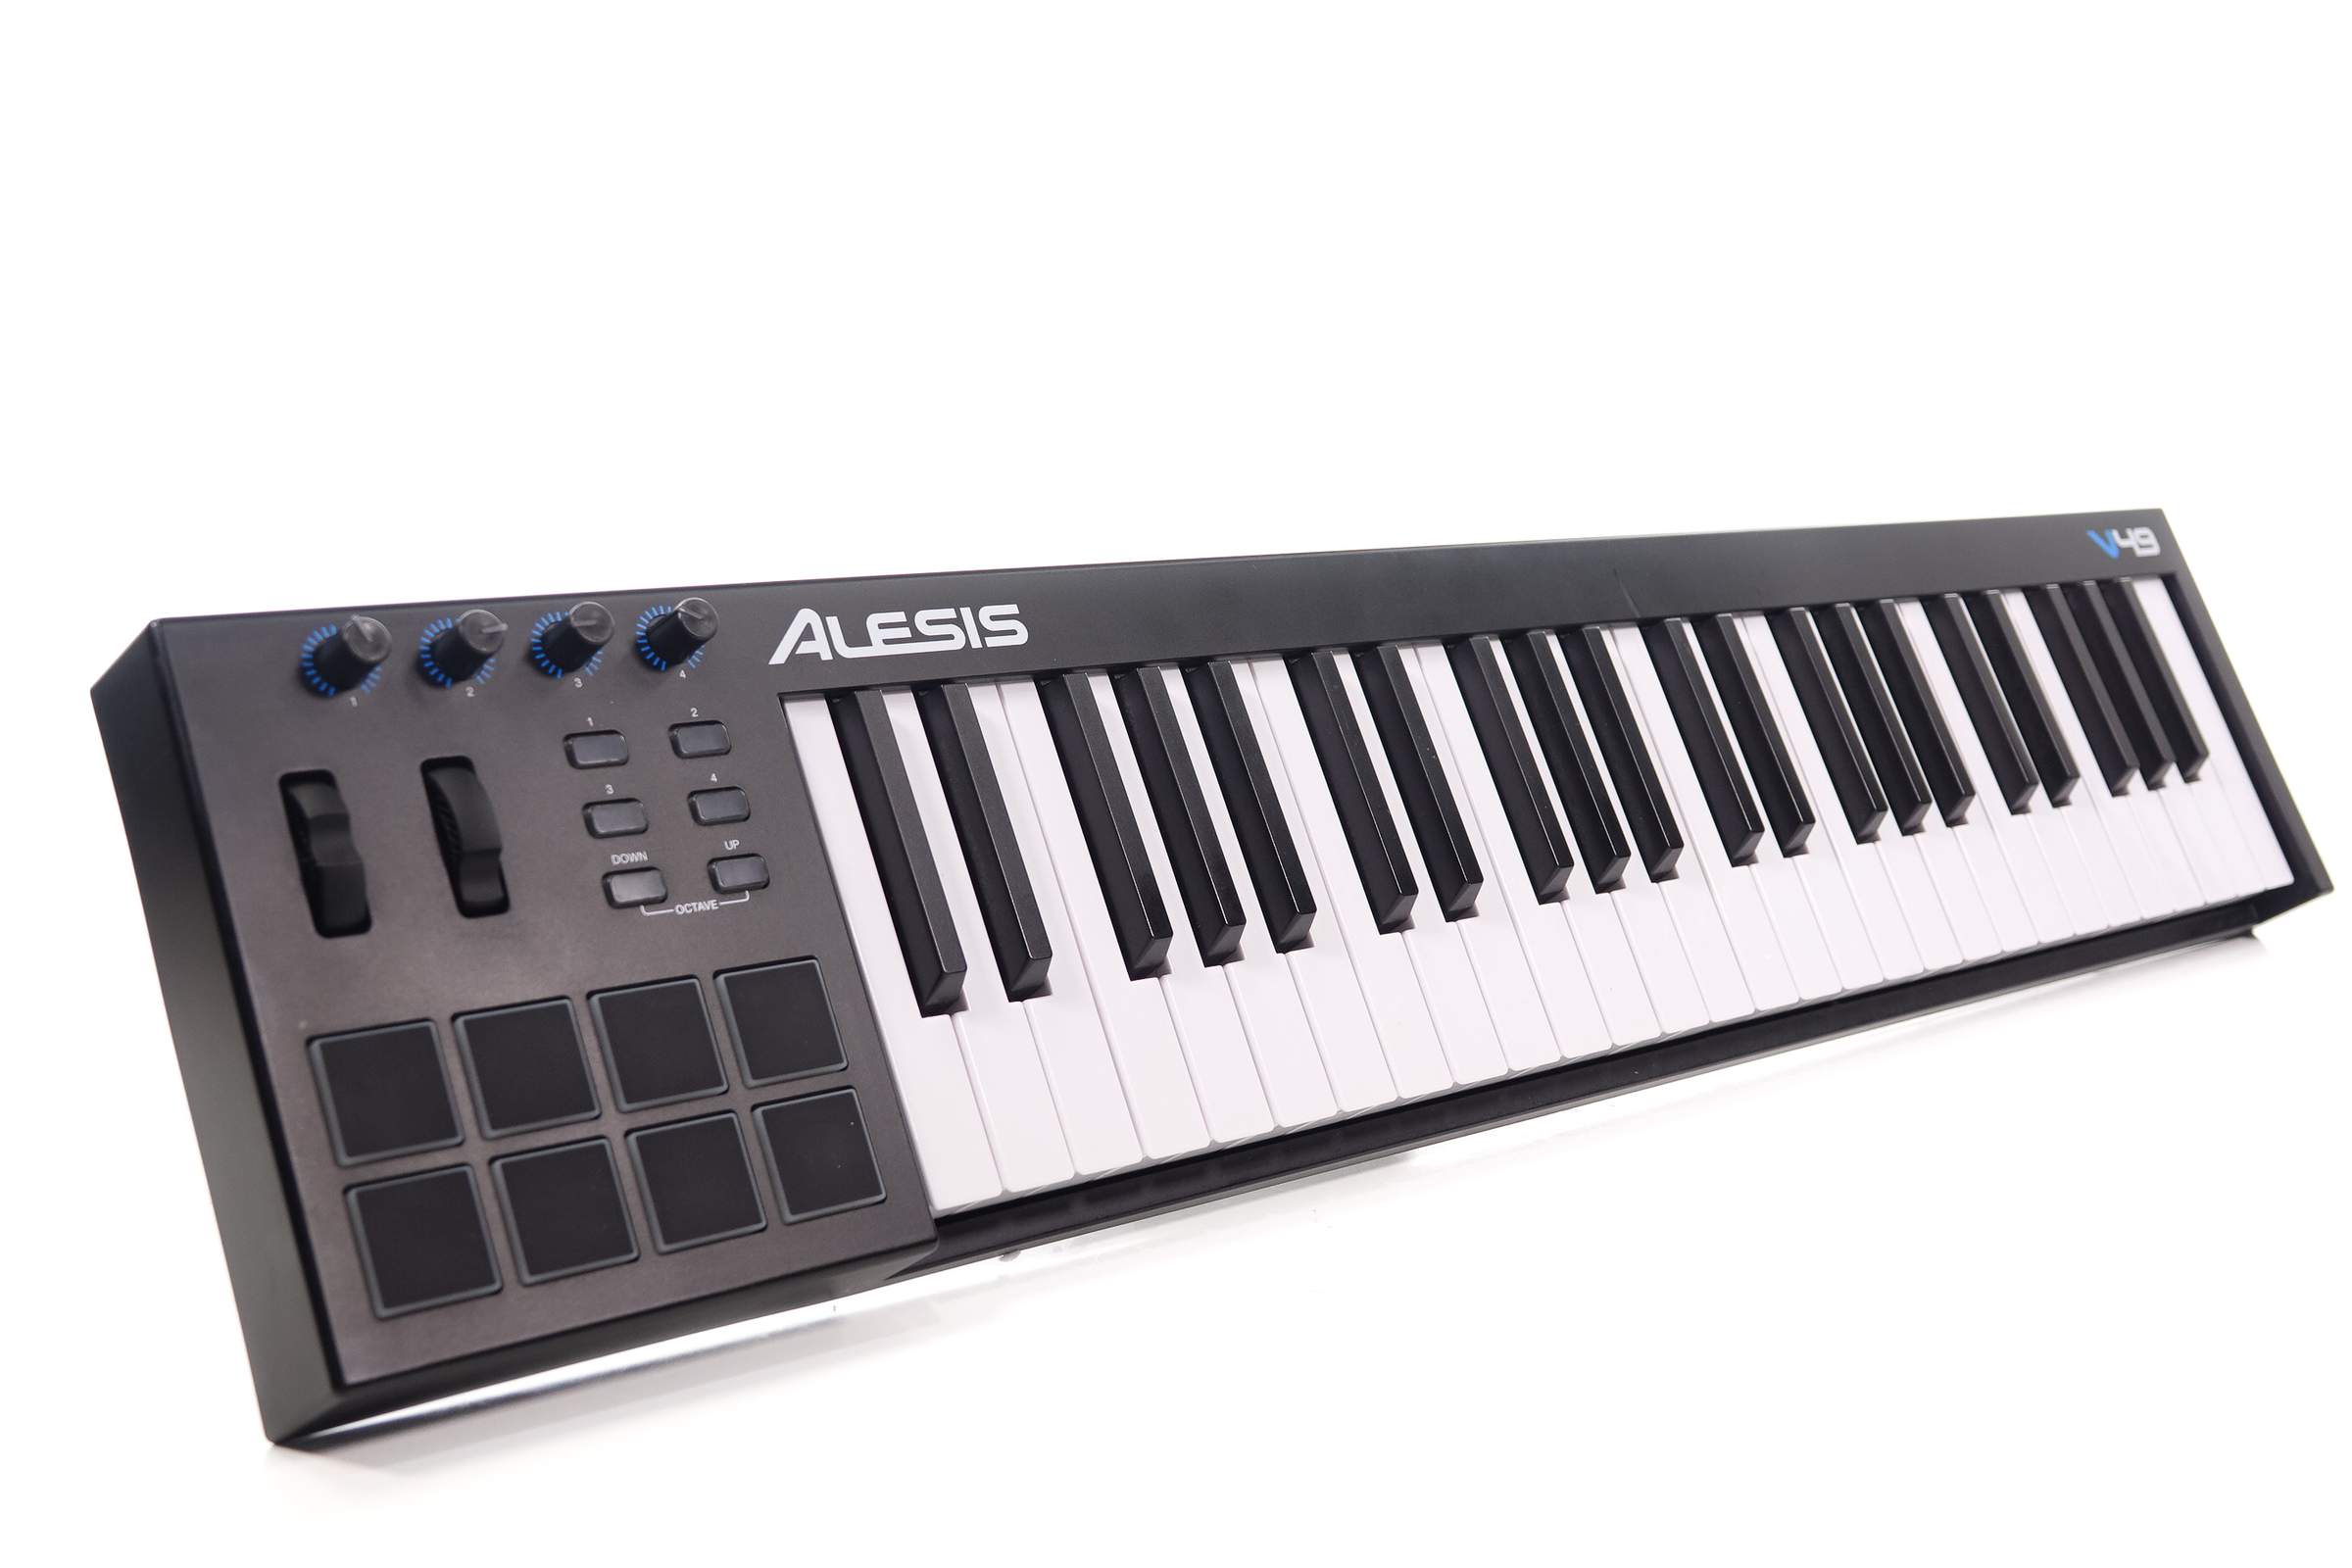 &#91;help&#93; Part alternatif Midi Controller Alesis V49 bisa pakai Part Keyboard Yamaha??